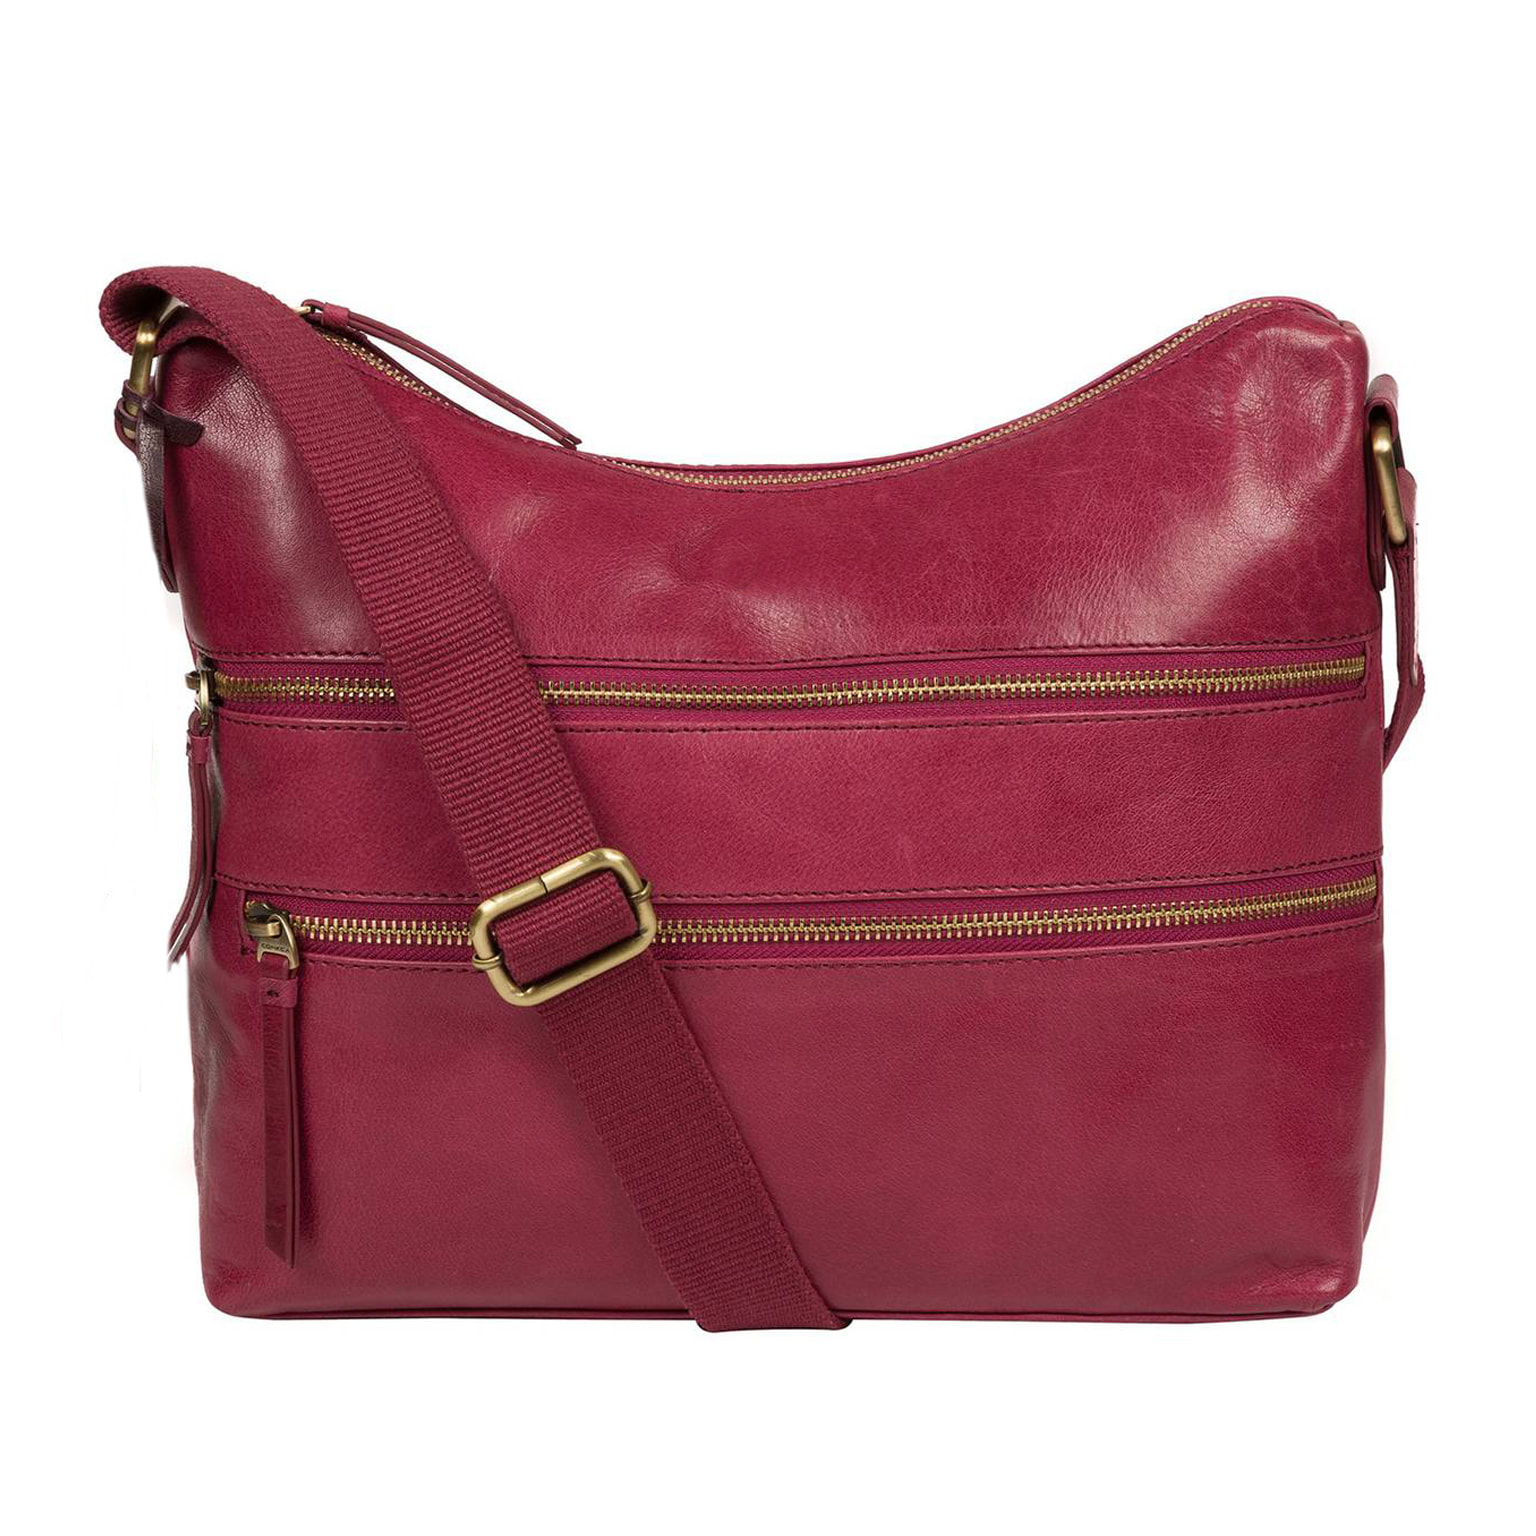 Pink Leather Cross Body Bag, Shoulder Bag, Handbag